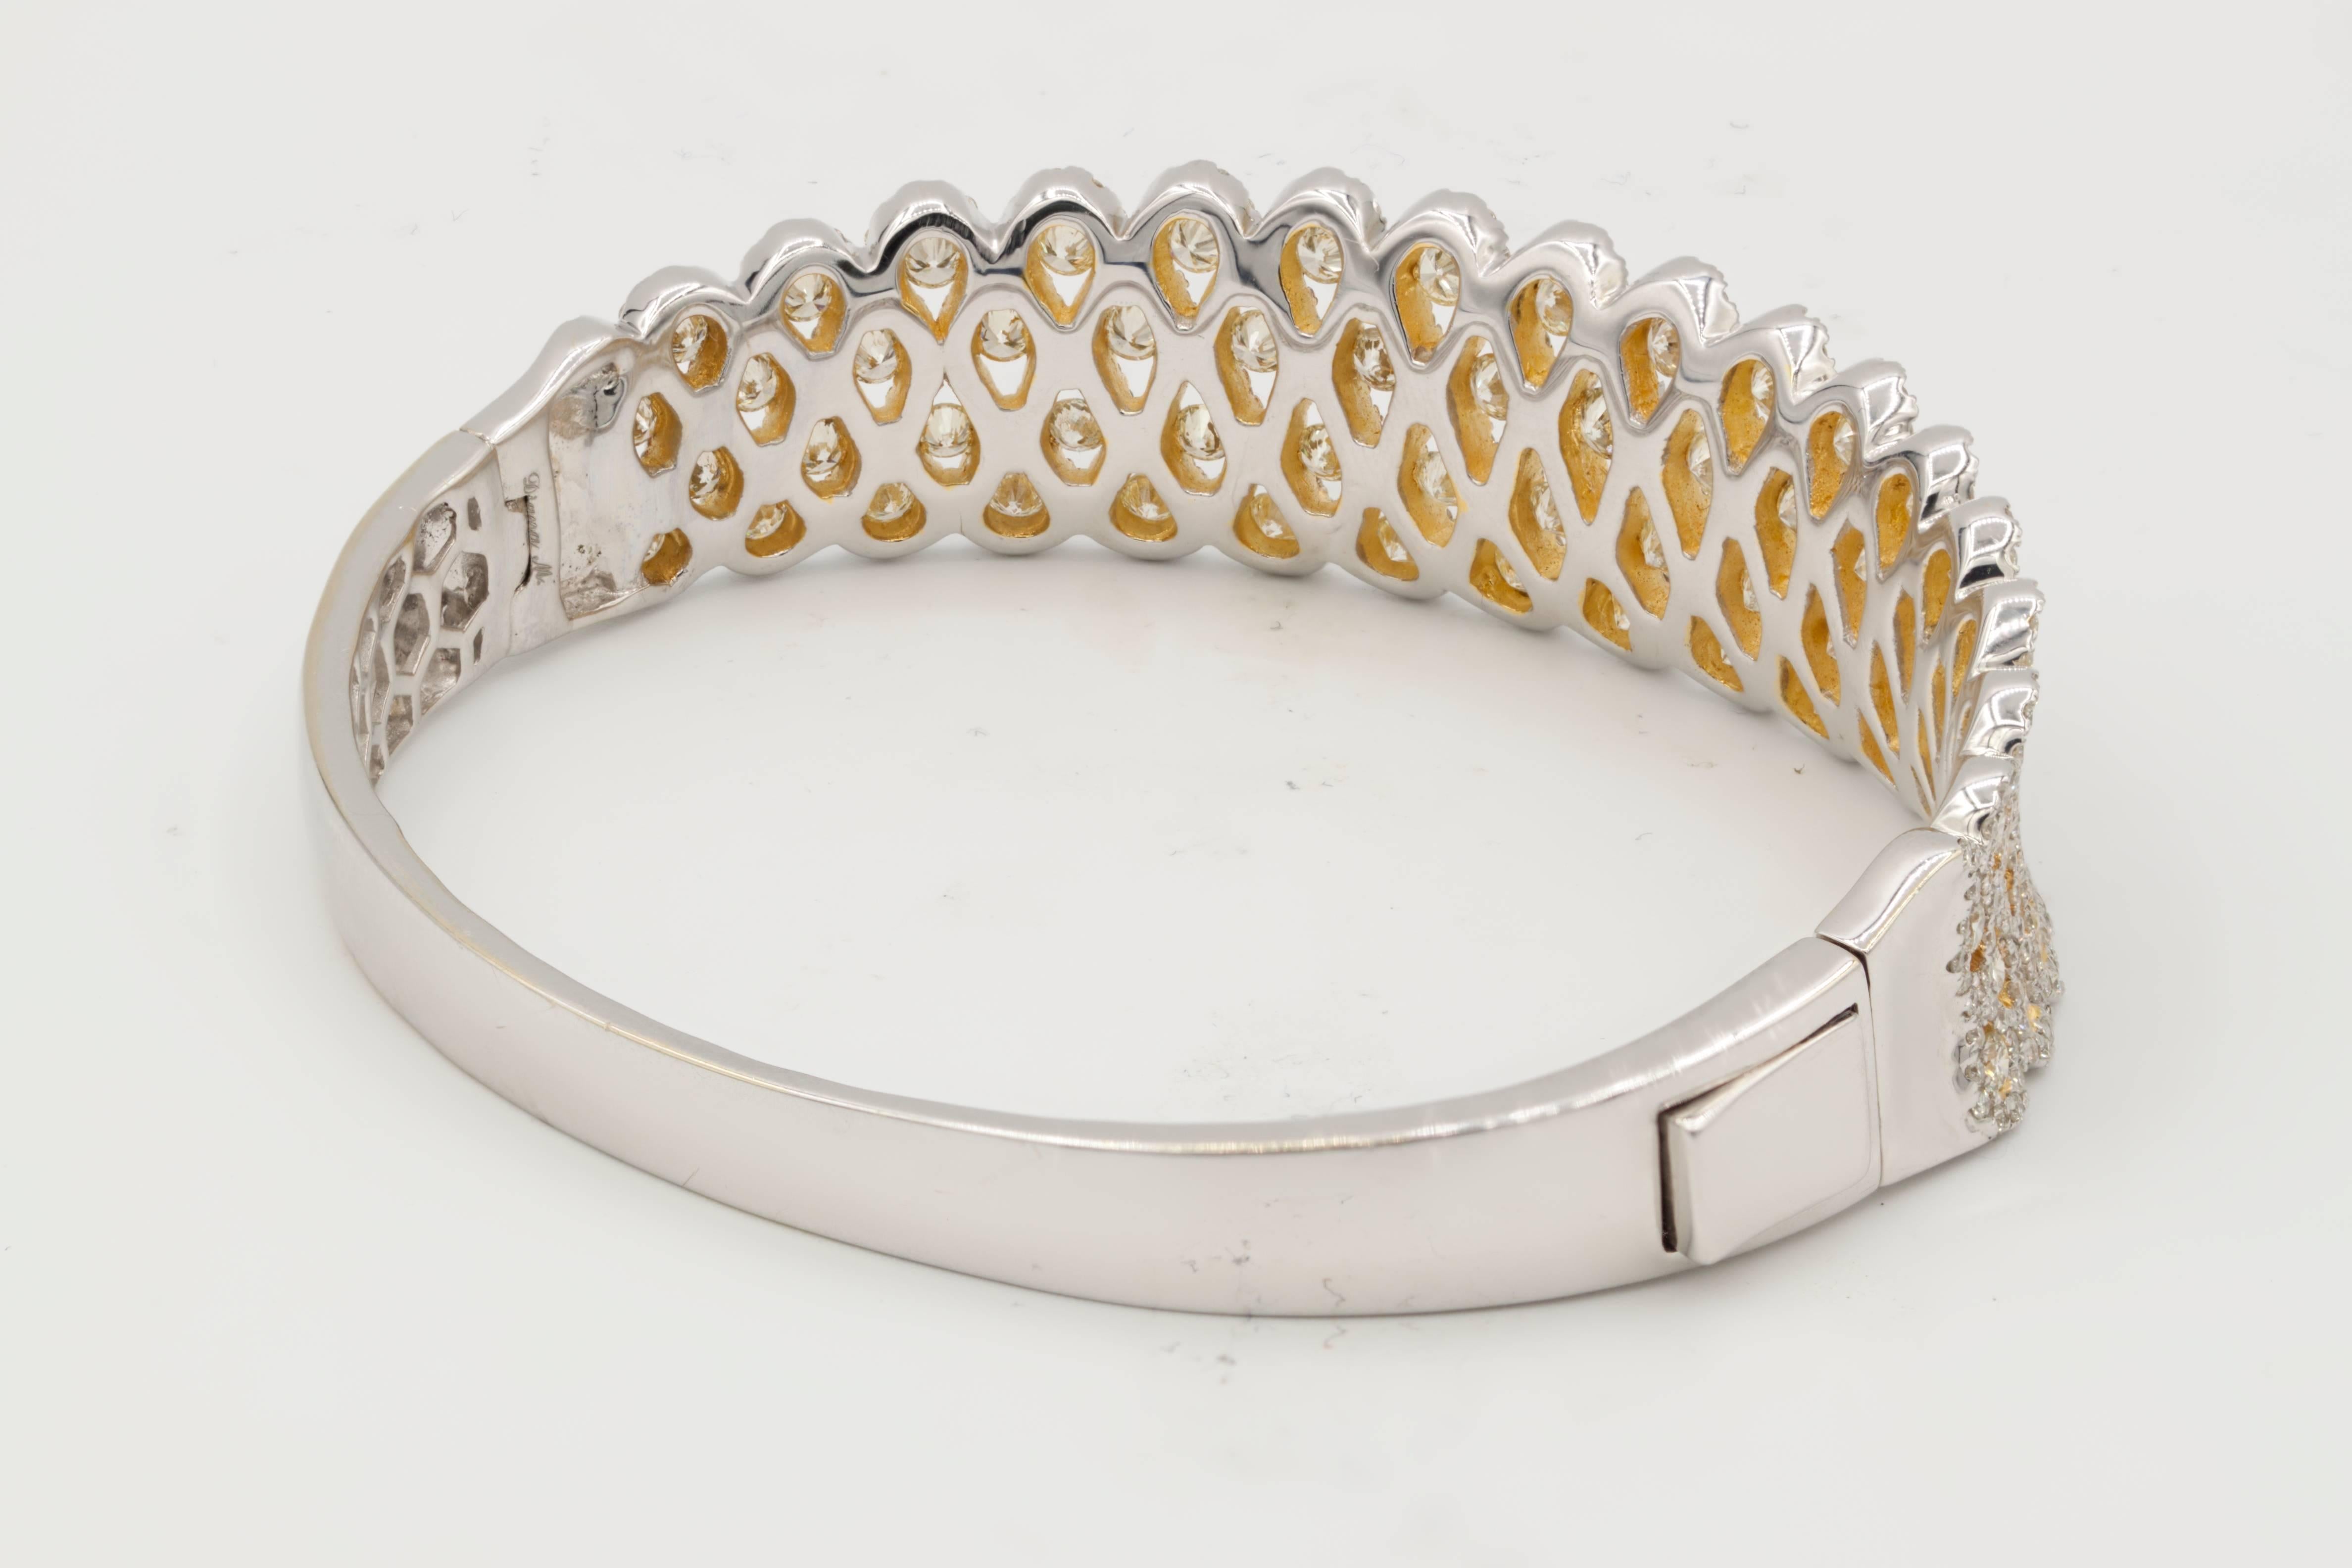 Bracelet Infinity Swirl Diamond en or blanc et jaune. Ce bracelet en diamant exquis présente 7,50 carats de diamants, sertis de manière invisible. Combinaison de diamants jaunes et blancs.

Ce produit est accompagné d'un certificat d'évaluation.
Ce